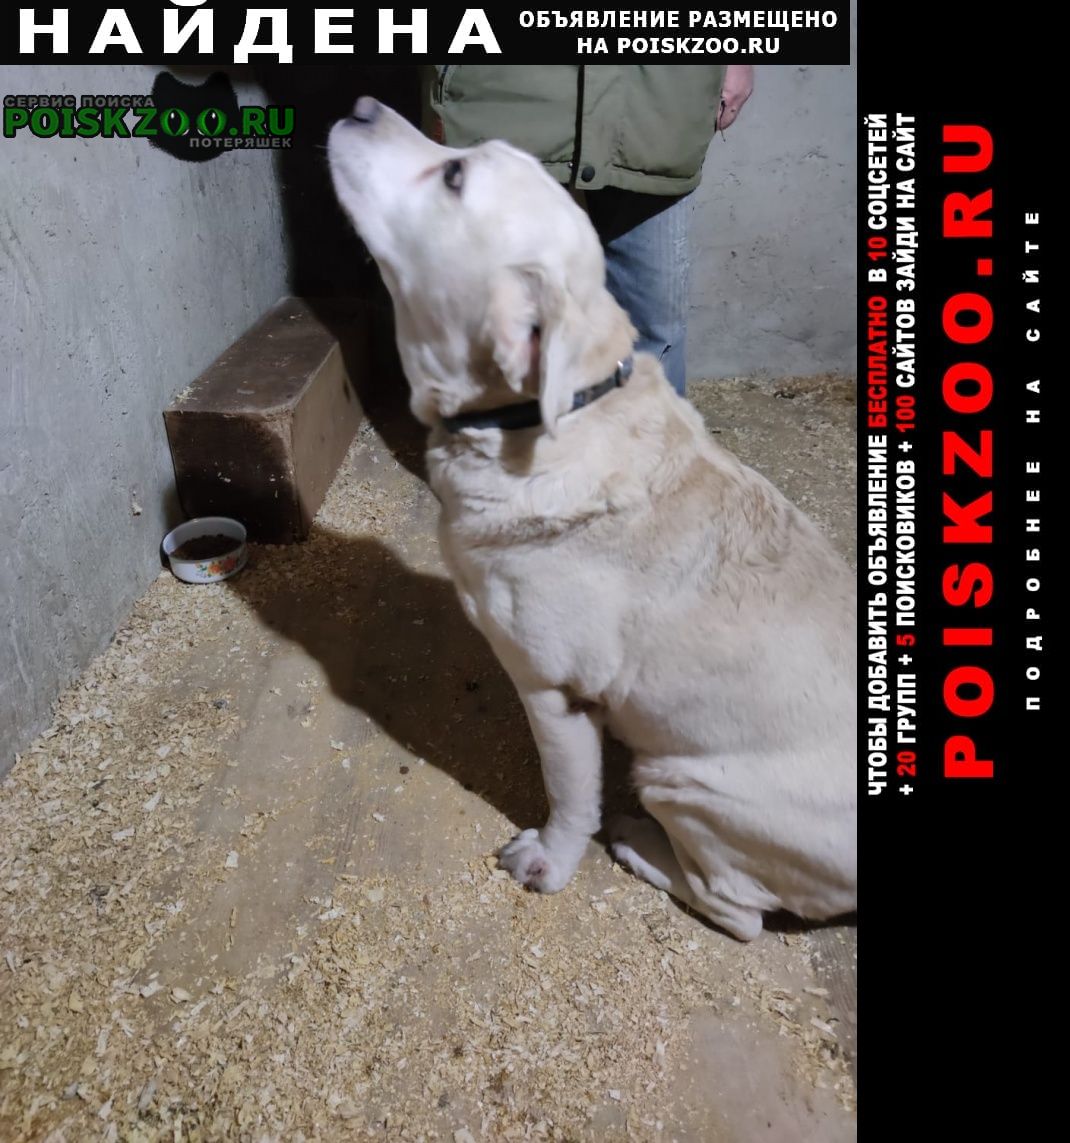 Найдена собака кобель лабрадор светлого окраса Севастополь